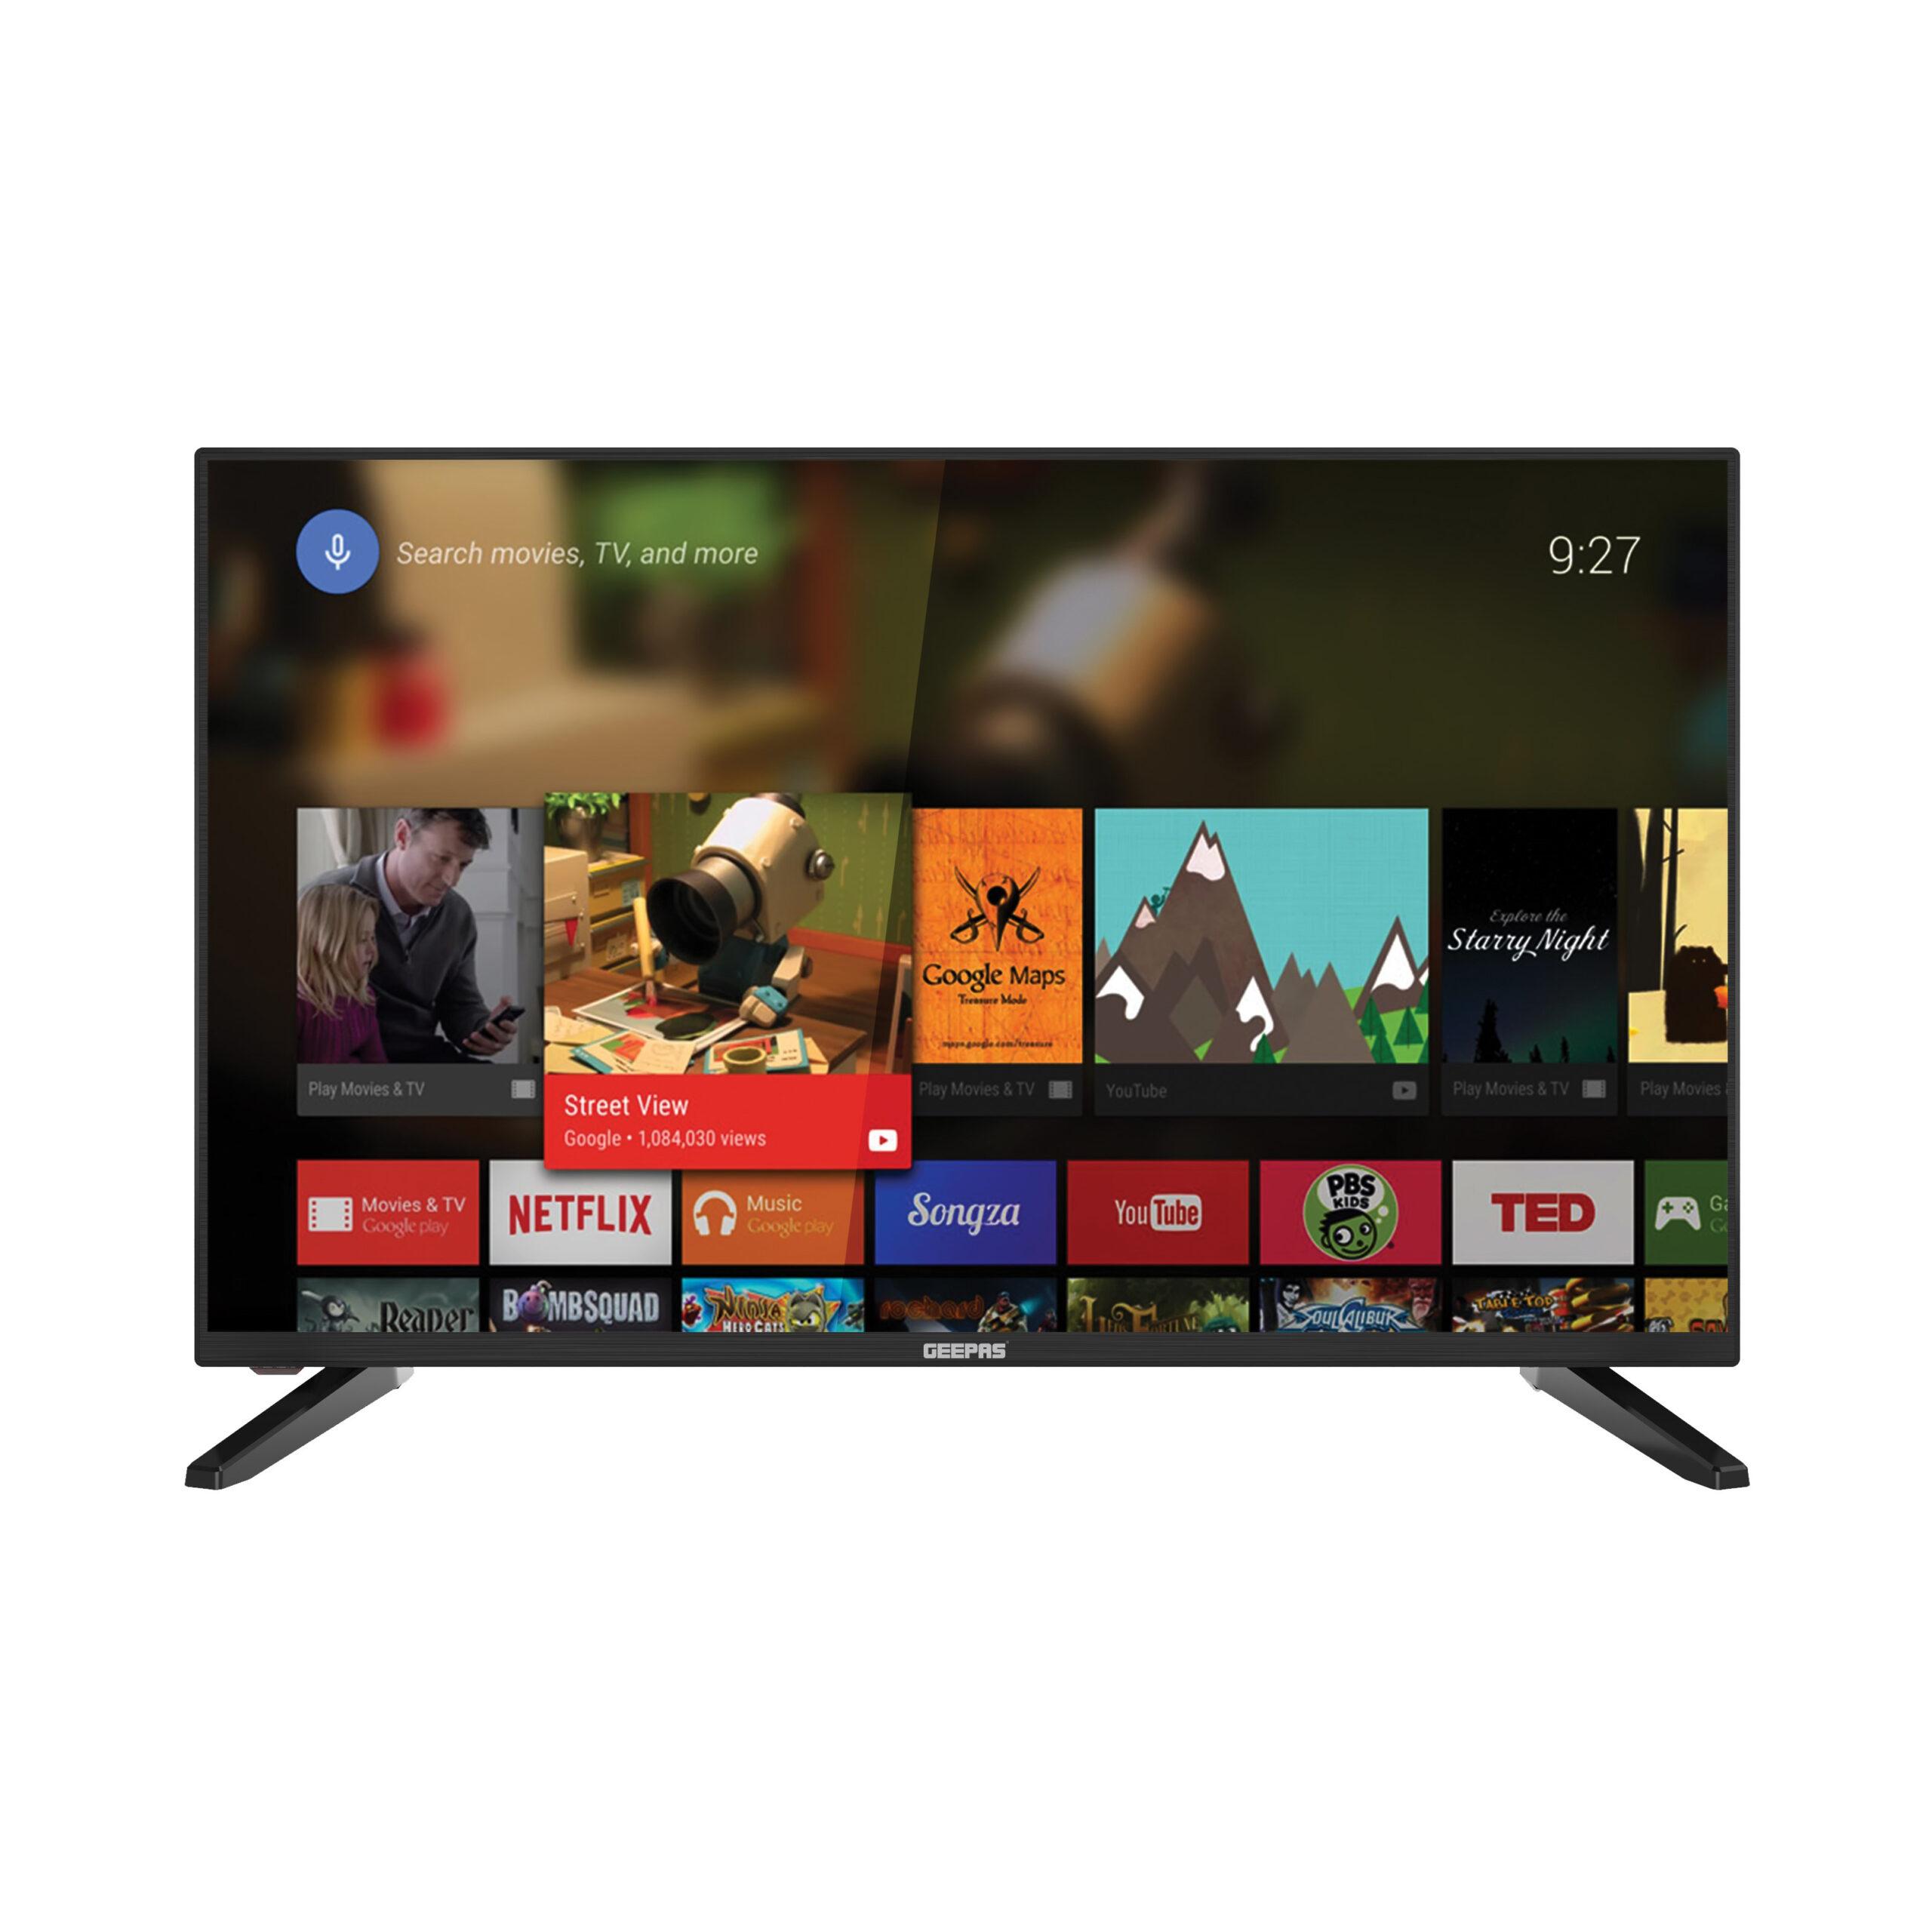 شاشة تلفزيون اندرويد سمارت 32 بوصة Geepas Android Smart TV 32 inch - cG9zdDo0NTg4NDk=